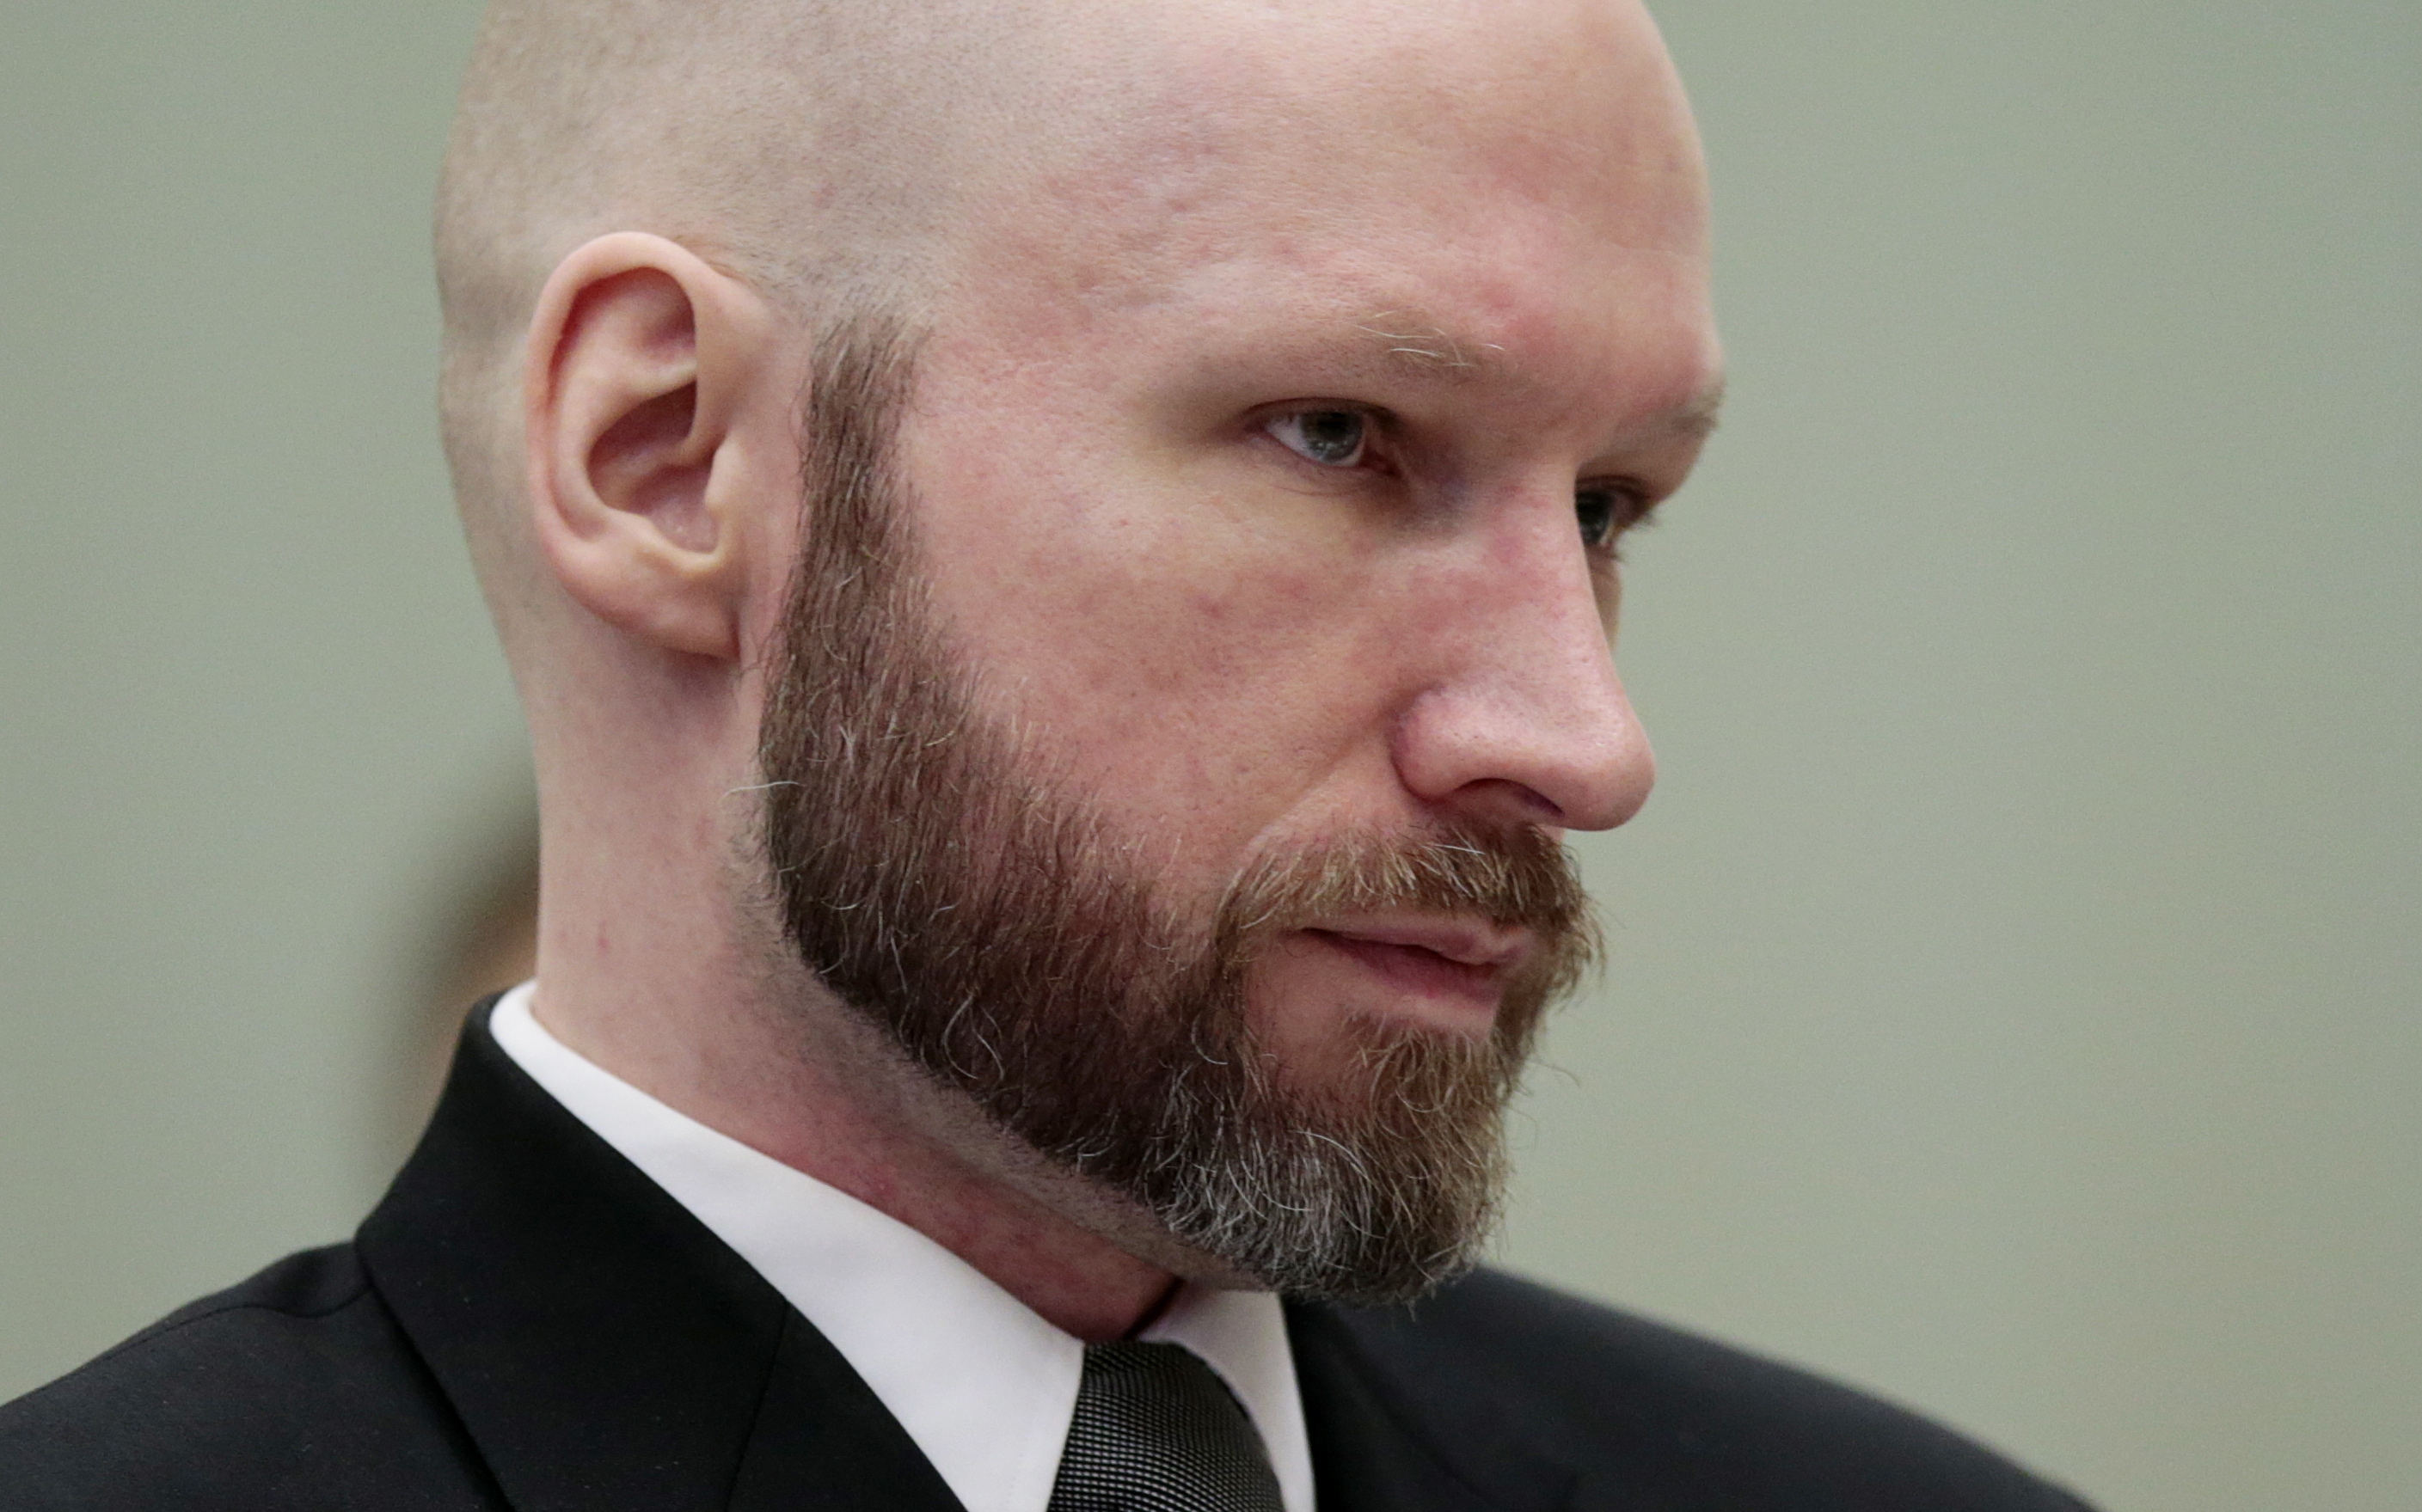 Elutasította a bíróság Breivik panaszát